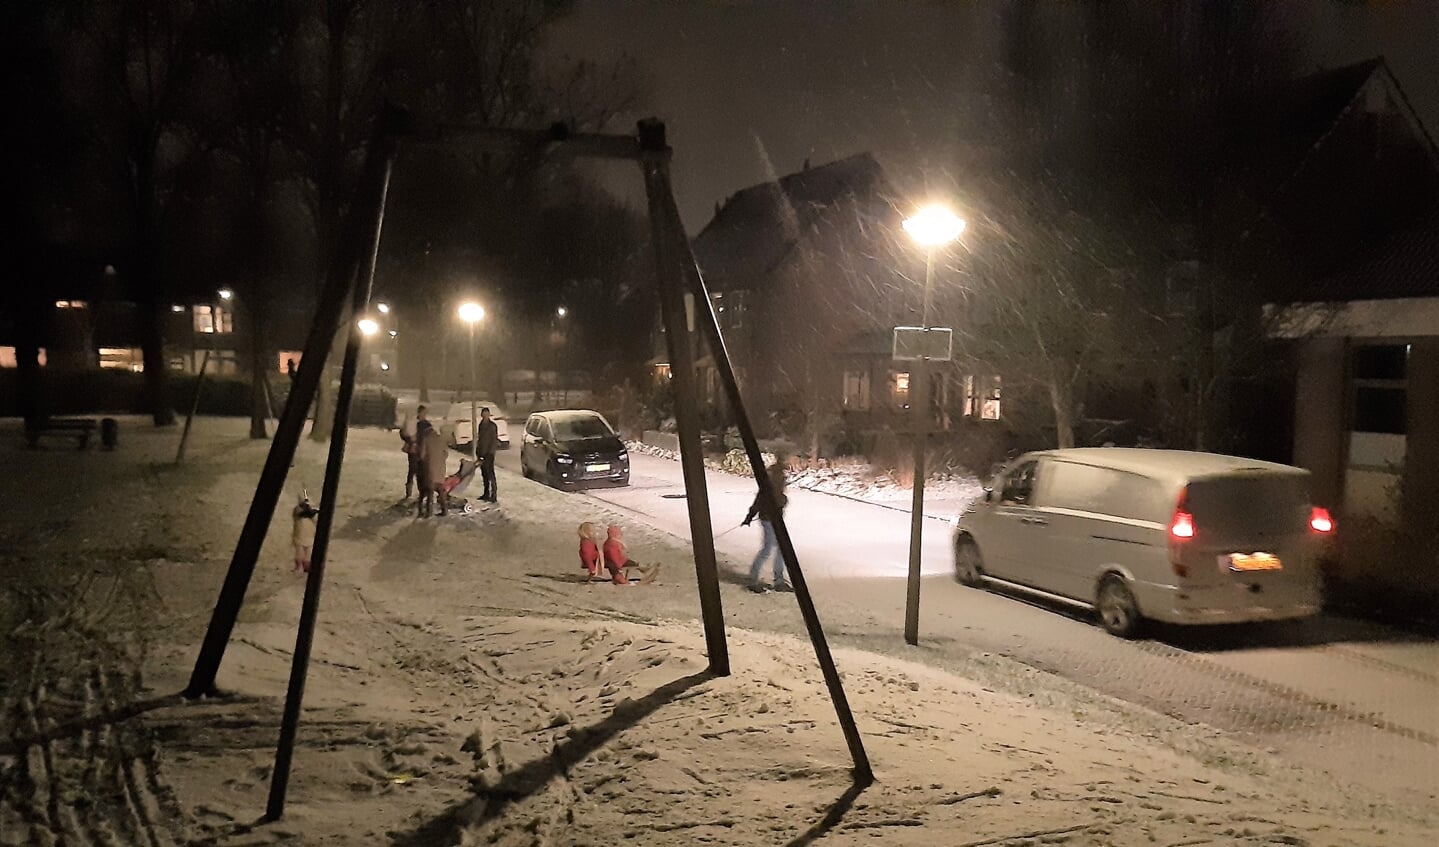 Nabij de speeltuin aan de Wethouder Zandbergenlaan werd meteen genoten van het kleine laagje sneeuw..